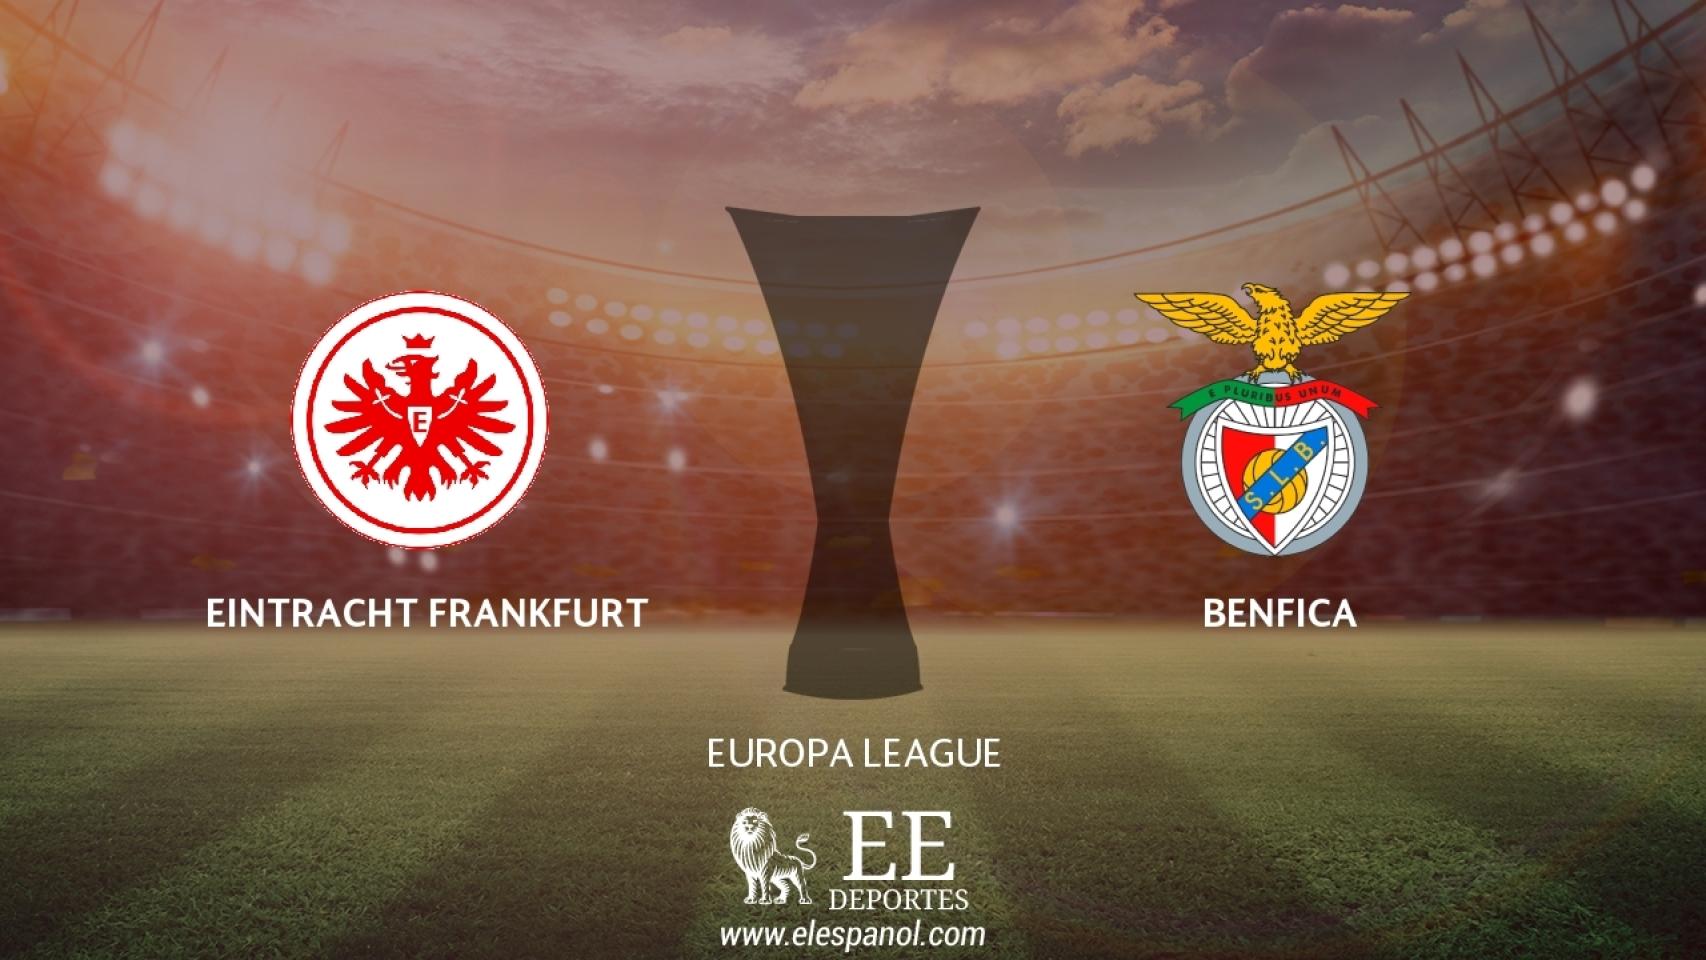 Eintracht Frankfurt - Benfica